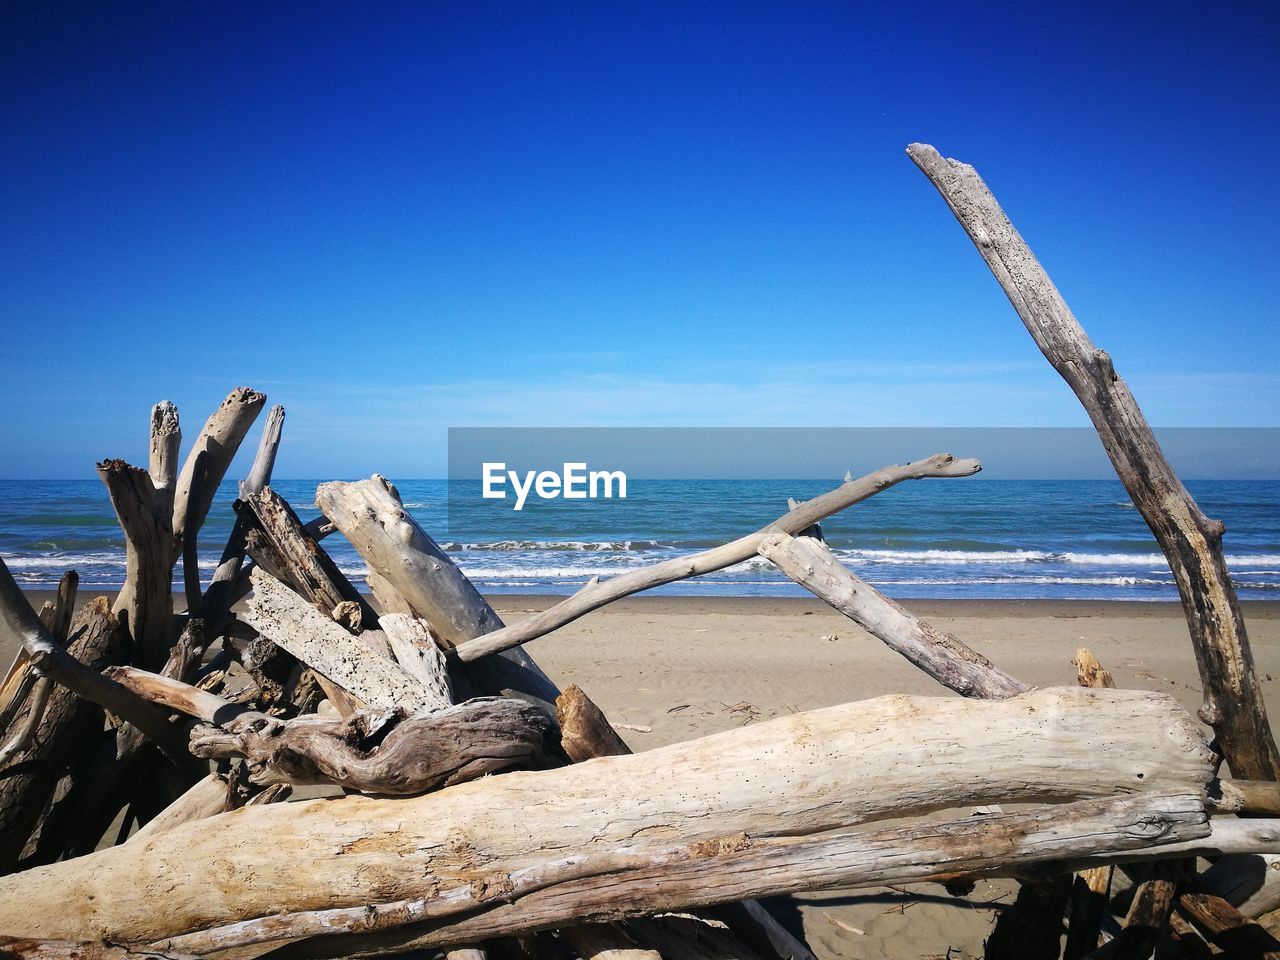 Driftwood on beach against blue sky